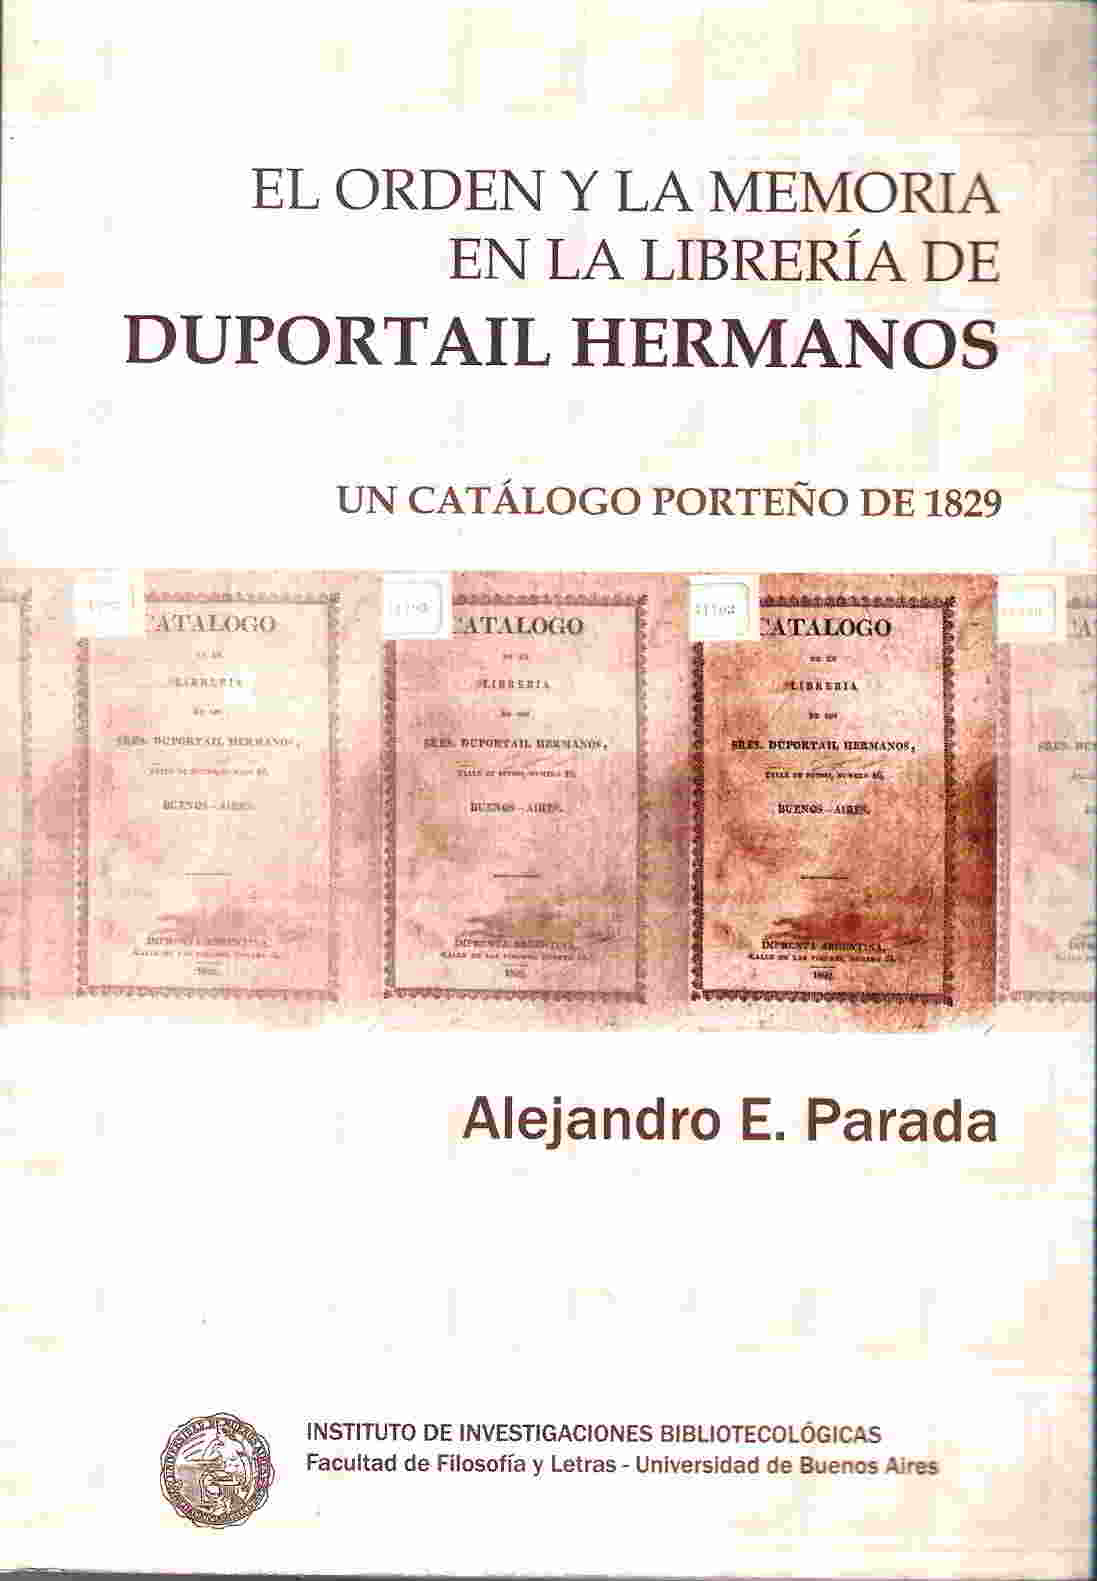 El orden y la memoria en la libreria de Duportail hermanos. Un catalogo porteo de 1829